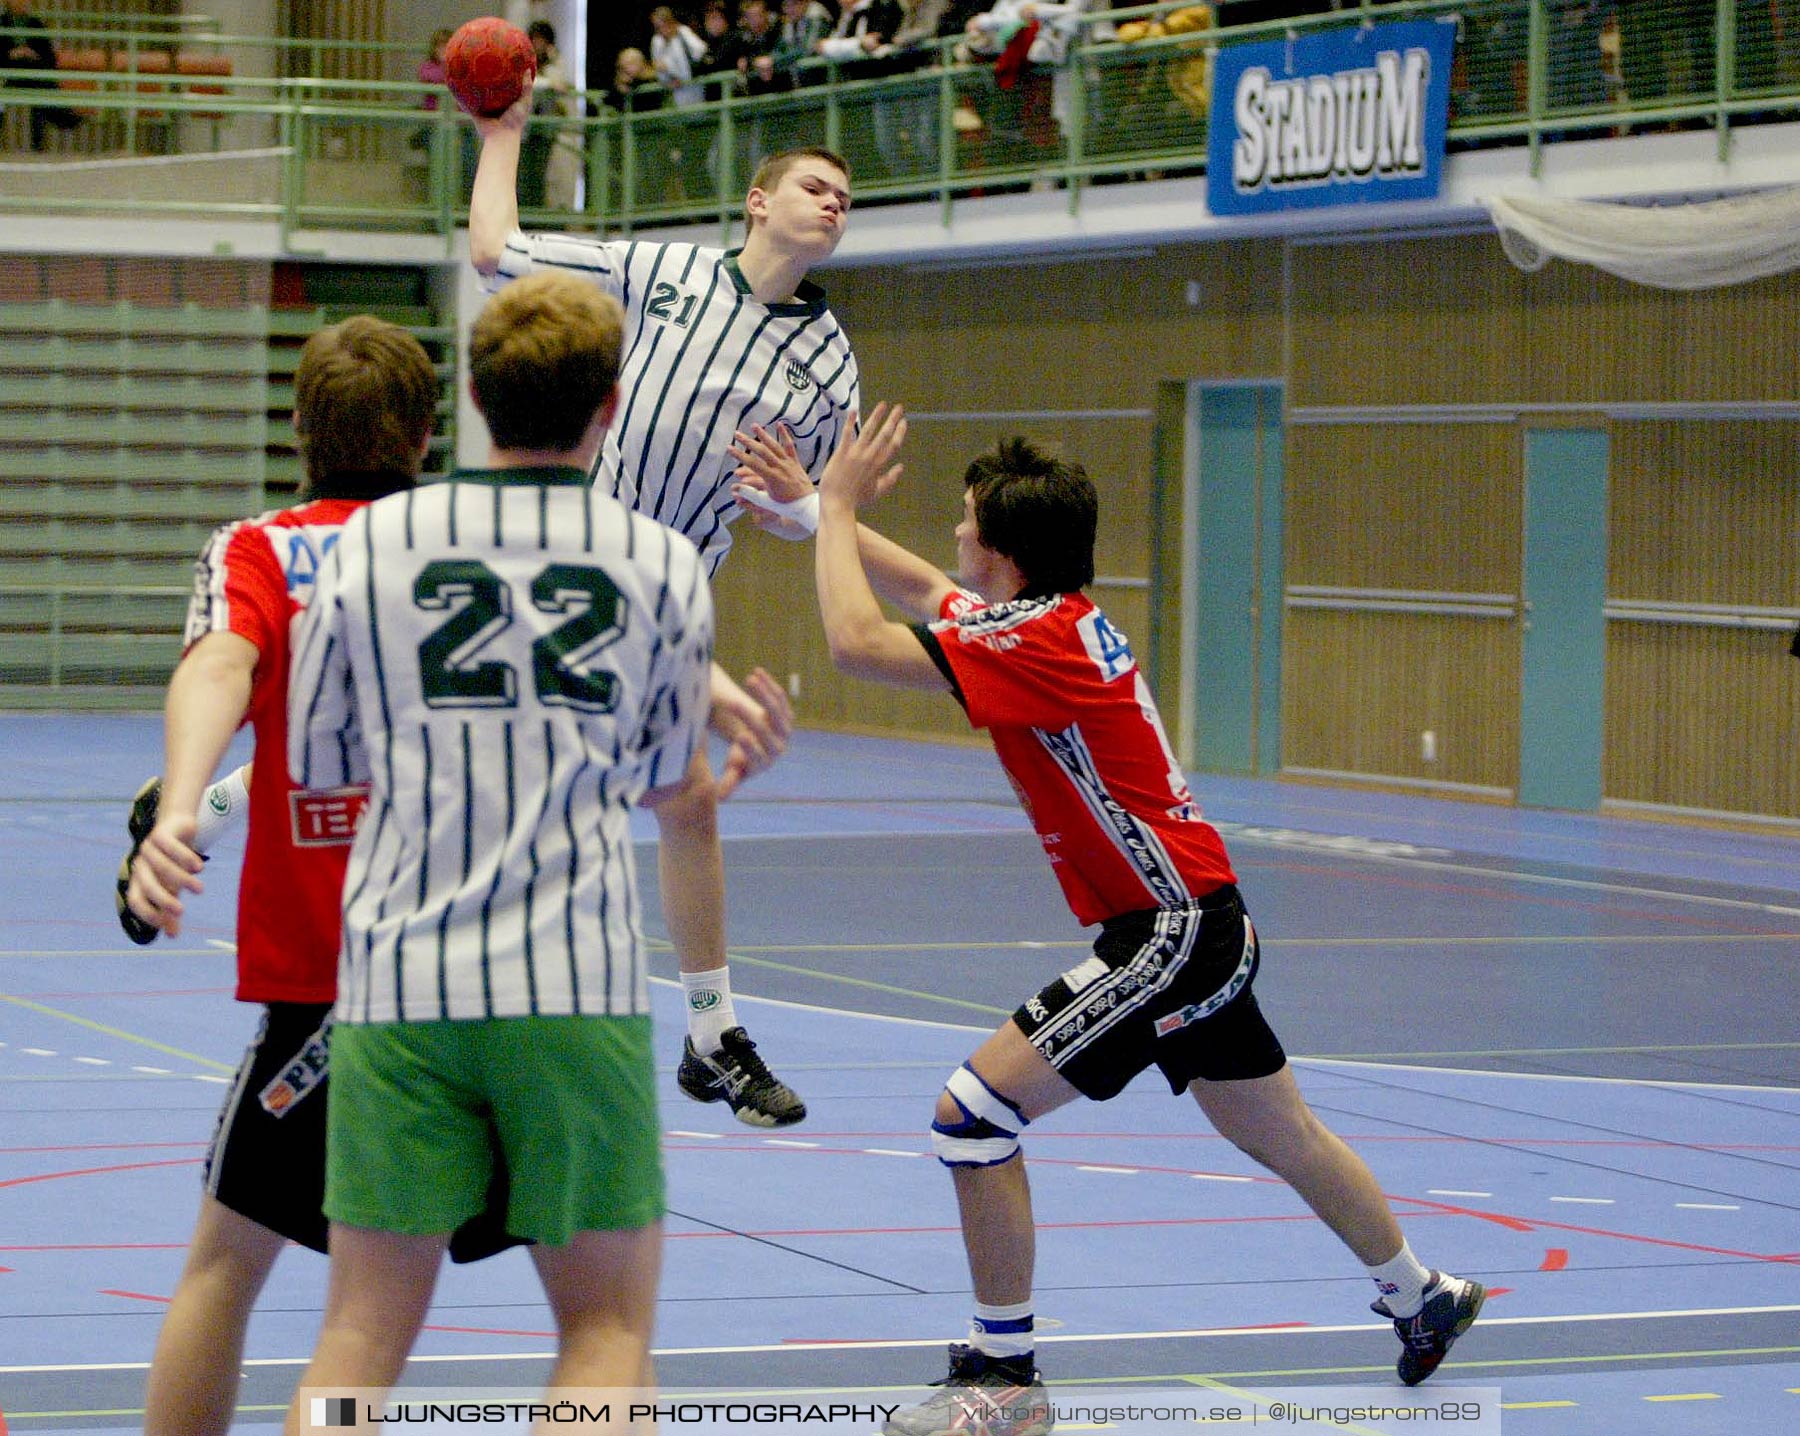 Skadevi Handbollscup 2005 Lördag,mix,Arena Skövde,Skövde,Sverige,Handboll,,2005,244383